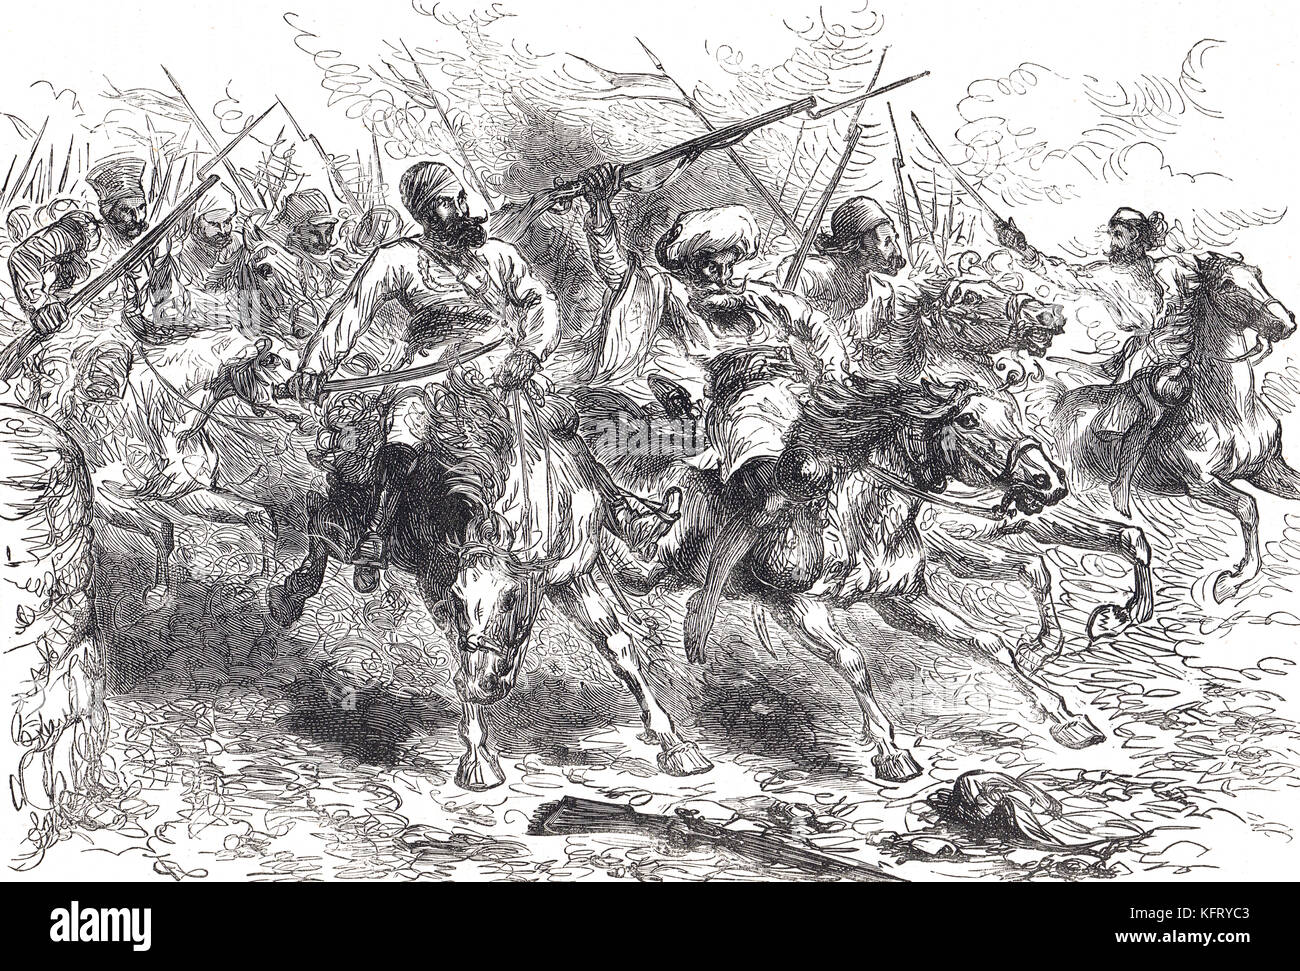 Los amotinados avanza en Delhi, India, la rebelión india de 1857 Foto de stock